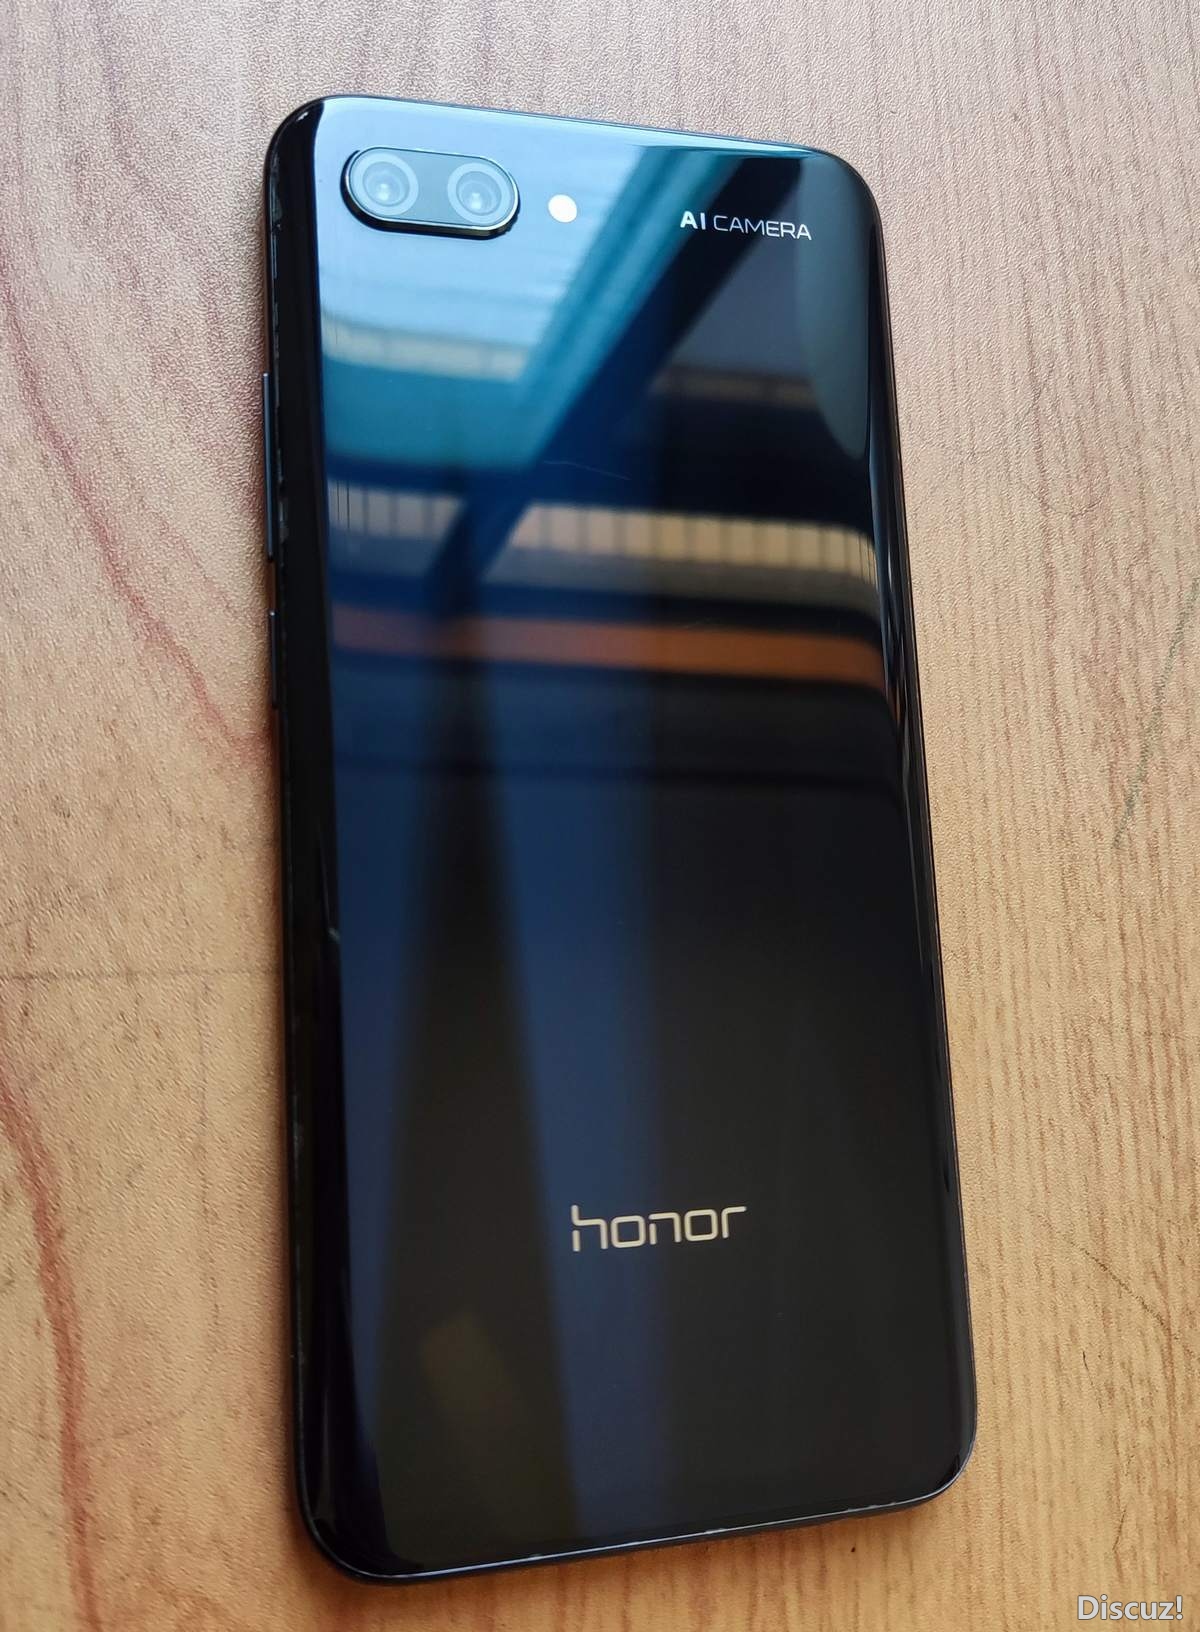 Honor-008.jpg